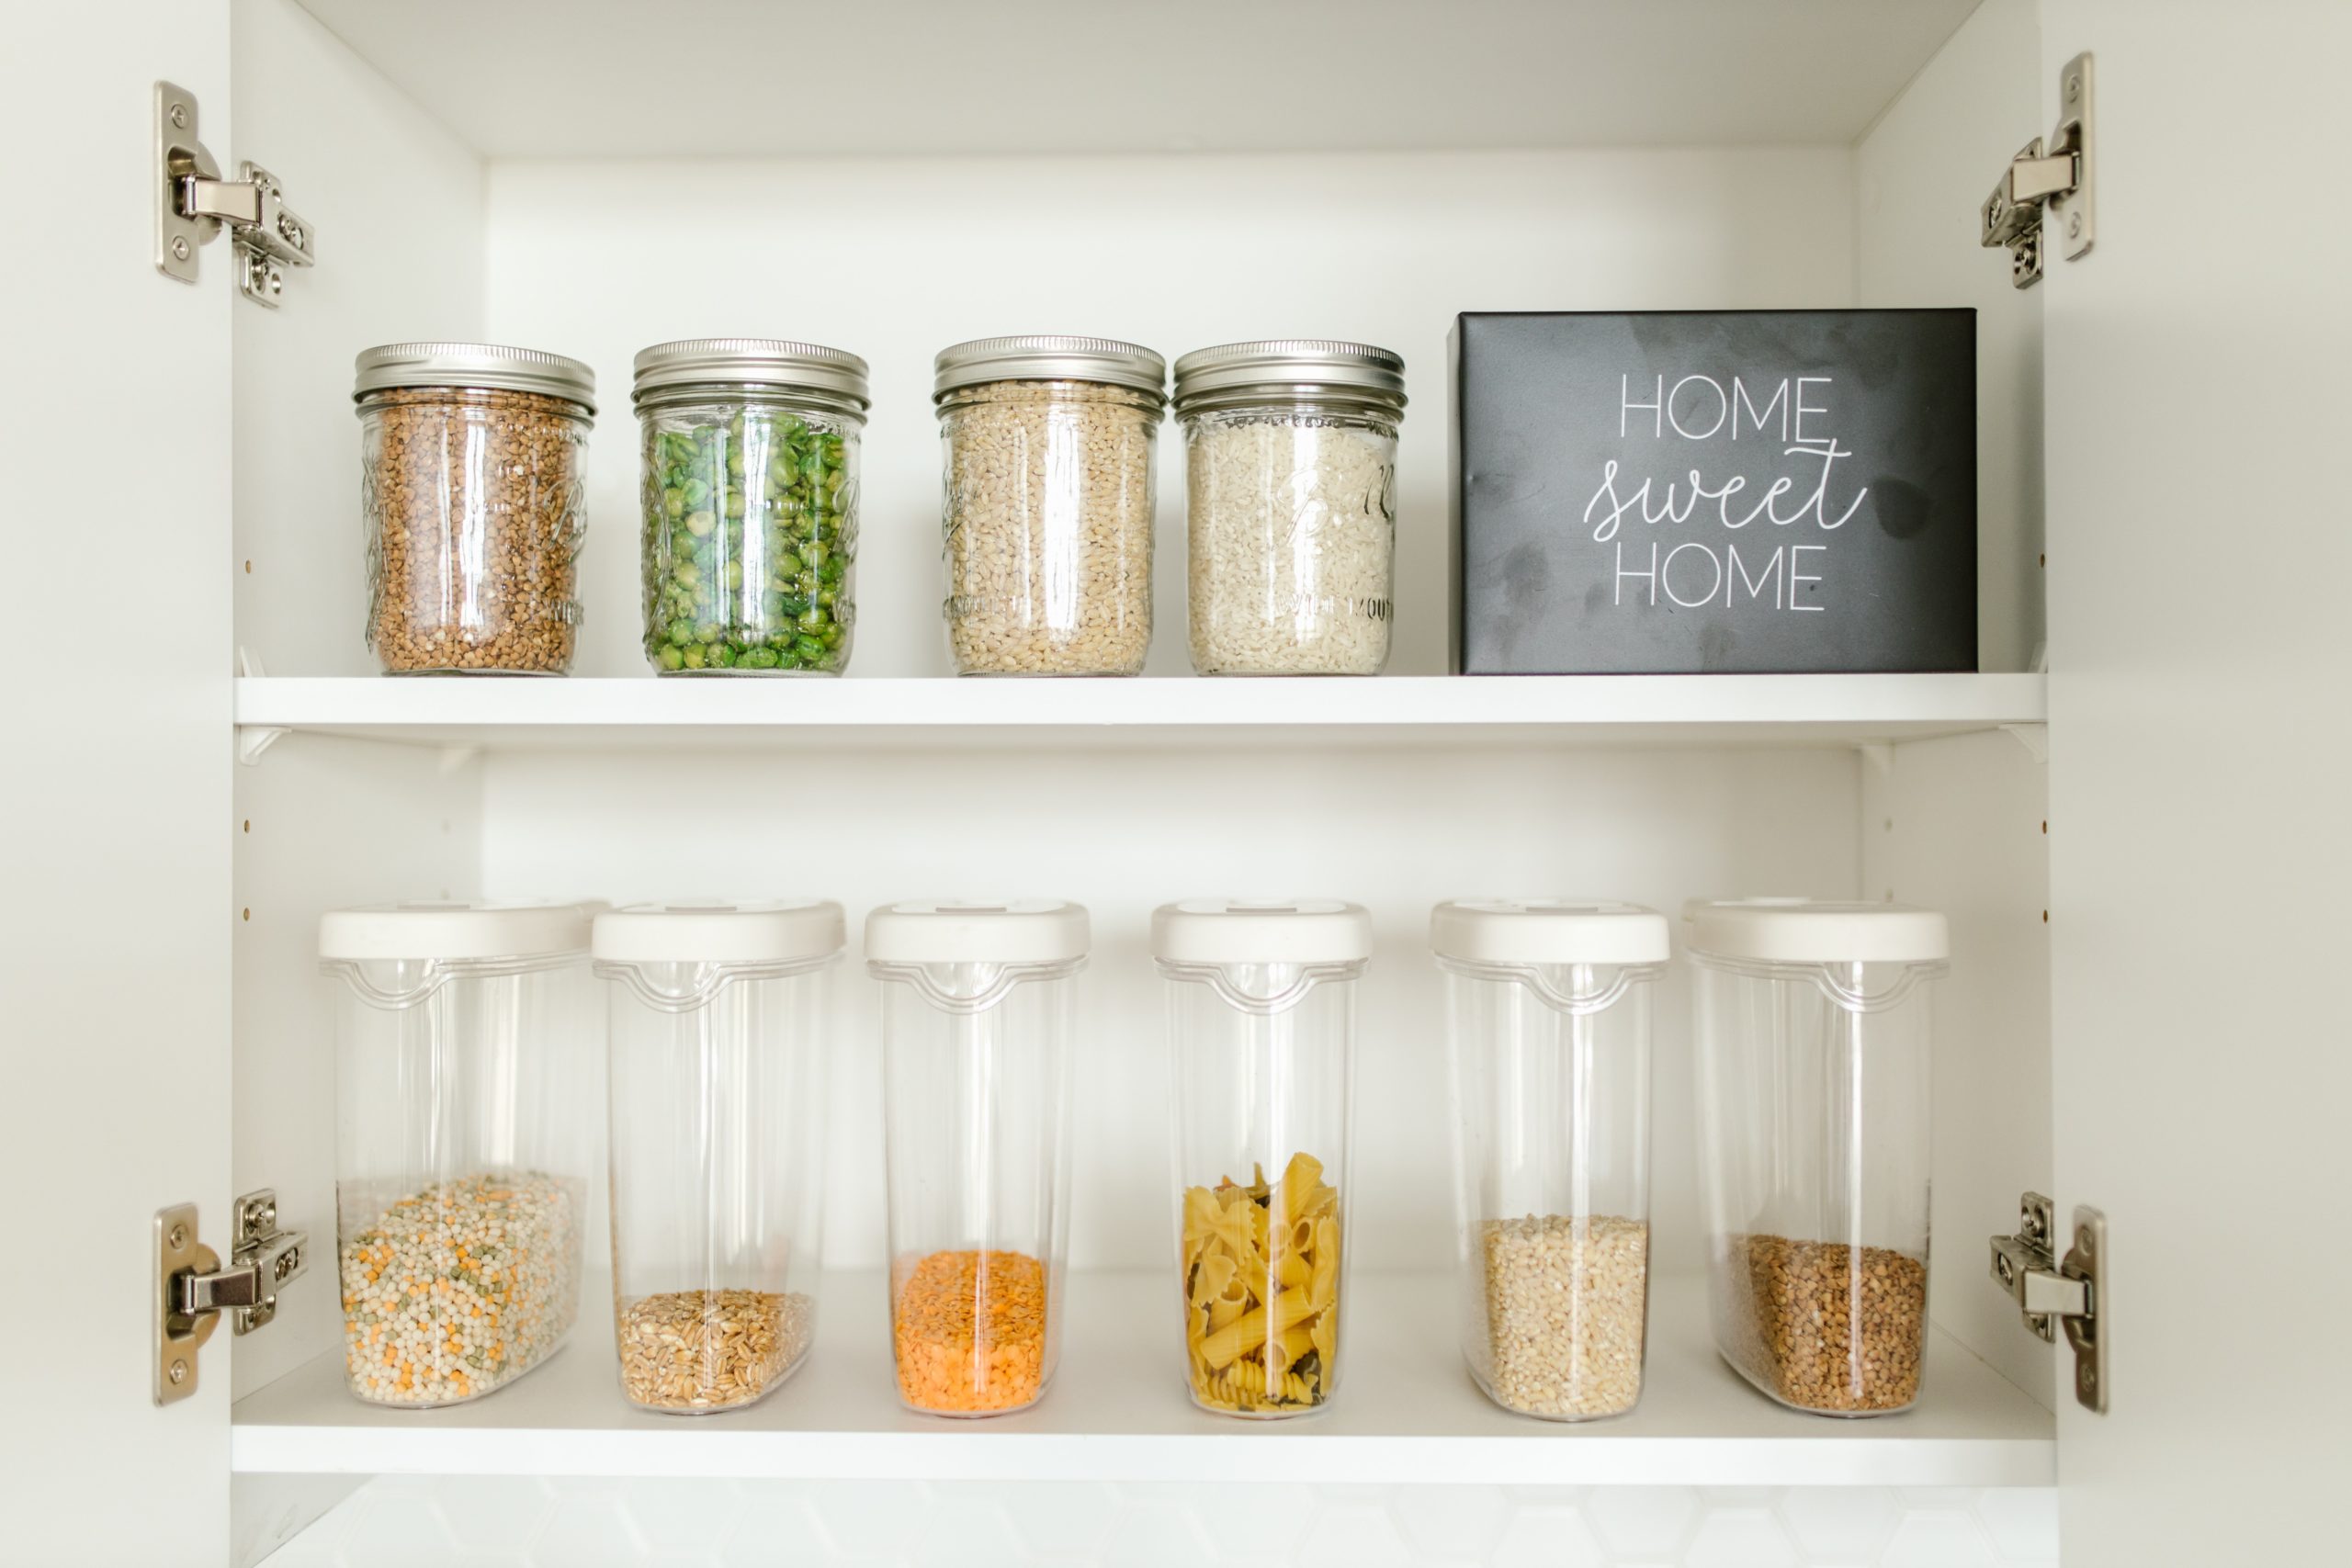 Plast, sklo, kov: v čom je zdravšie skladovať jedlo?